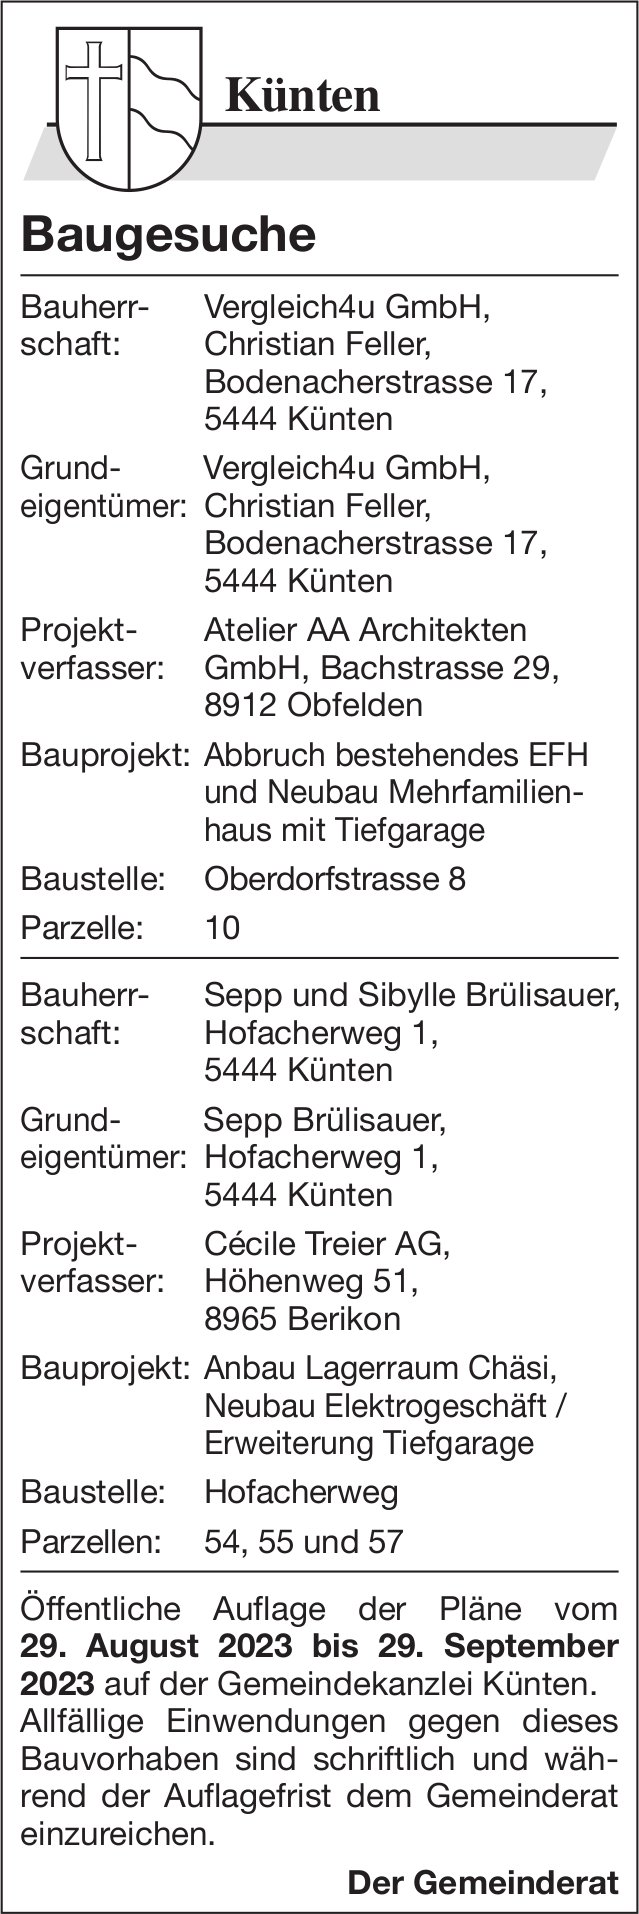 Baugesuche, Künten - Vergleich4u GmbH